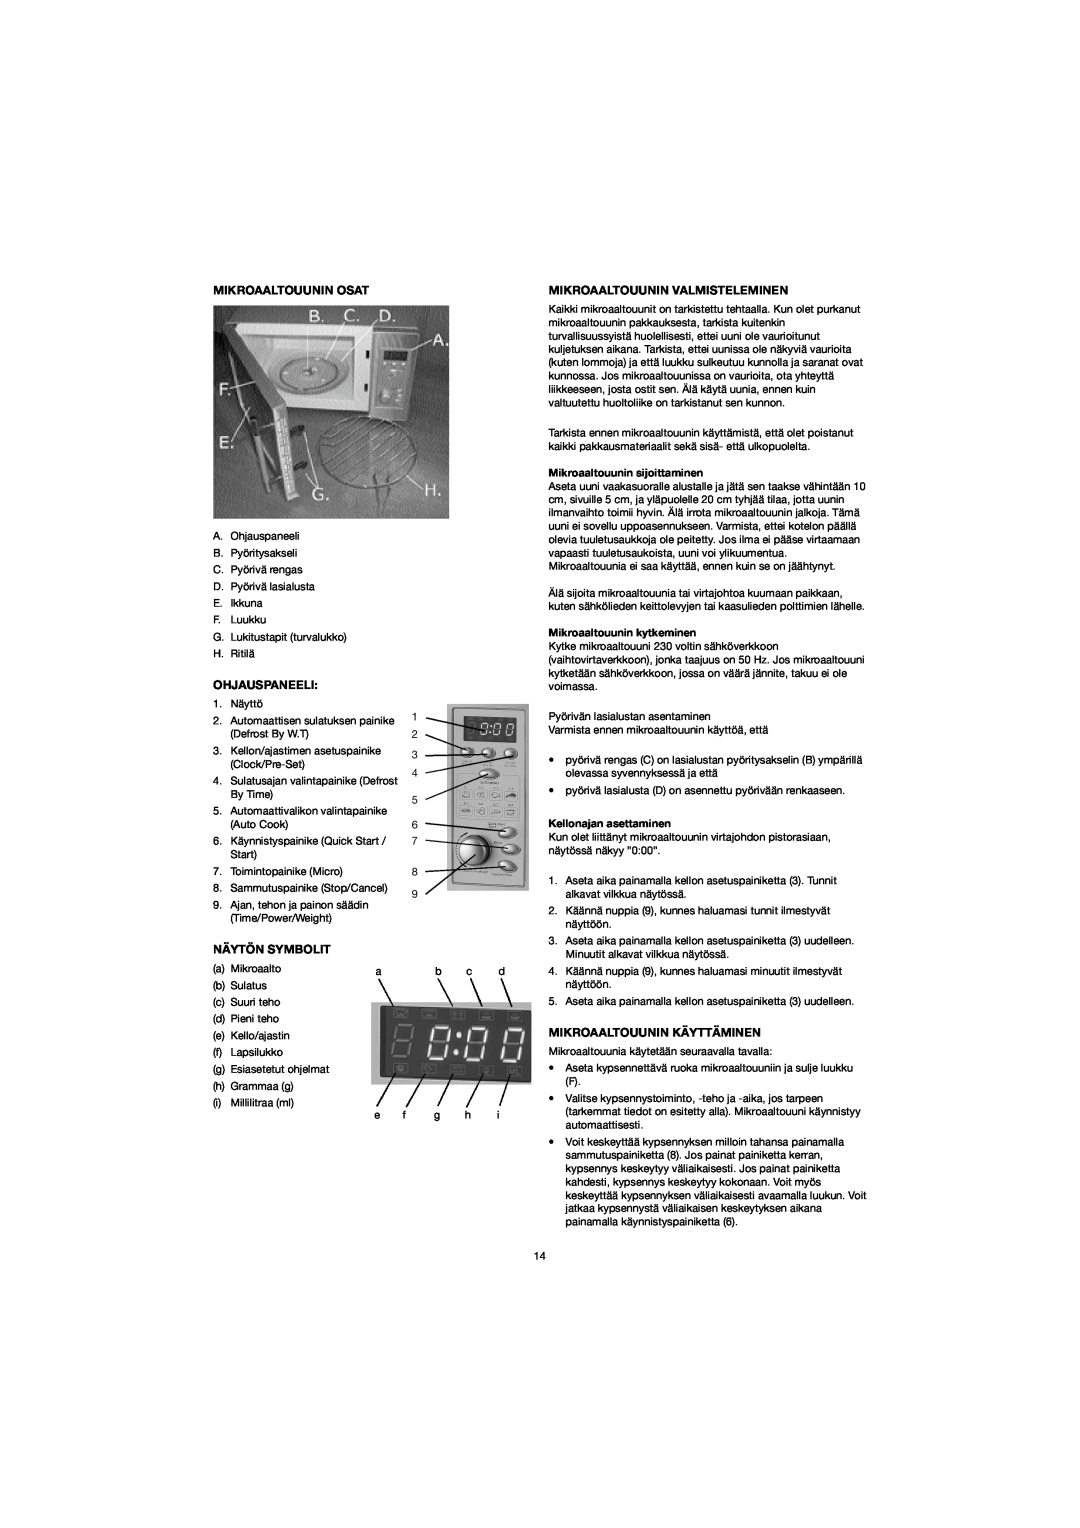 Melissa 753-094 manual Mikroaaltouunin Osat, Ohjauspaneeli, Näytön Symbolit, Mikroaaltouunin Valmisteleminen 